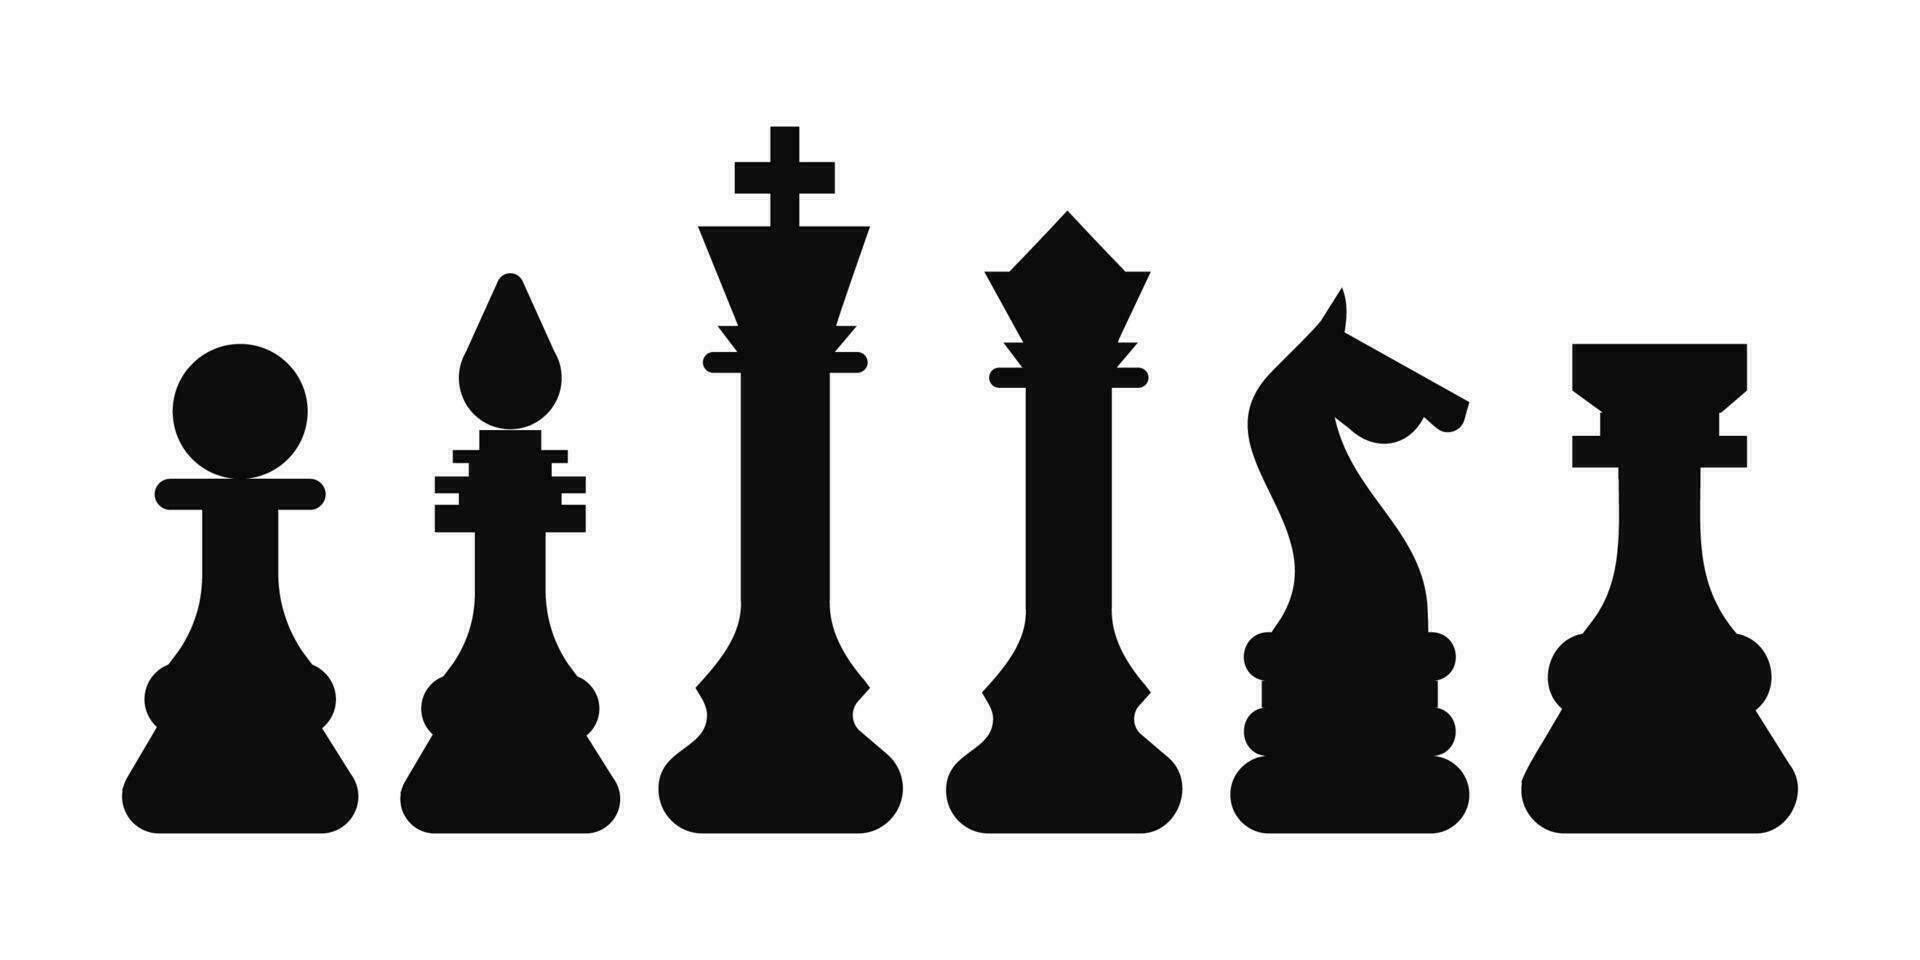 xadrez símbolo Projeto arte lazer estratégia. esporte pictograma jogos conceito vetor dados borda. figura rei, rainha, bispo, cavaleiro, torre, penhor.